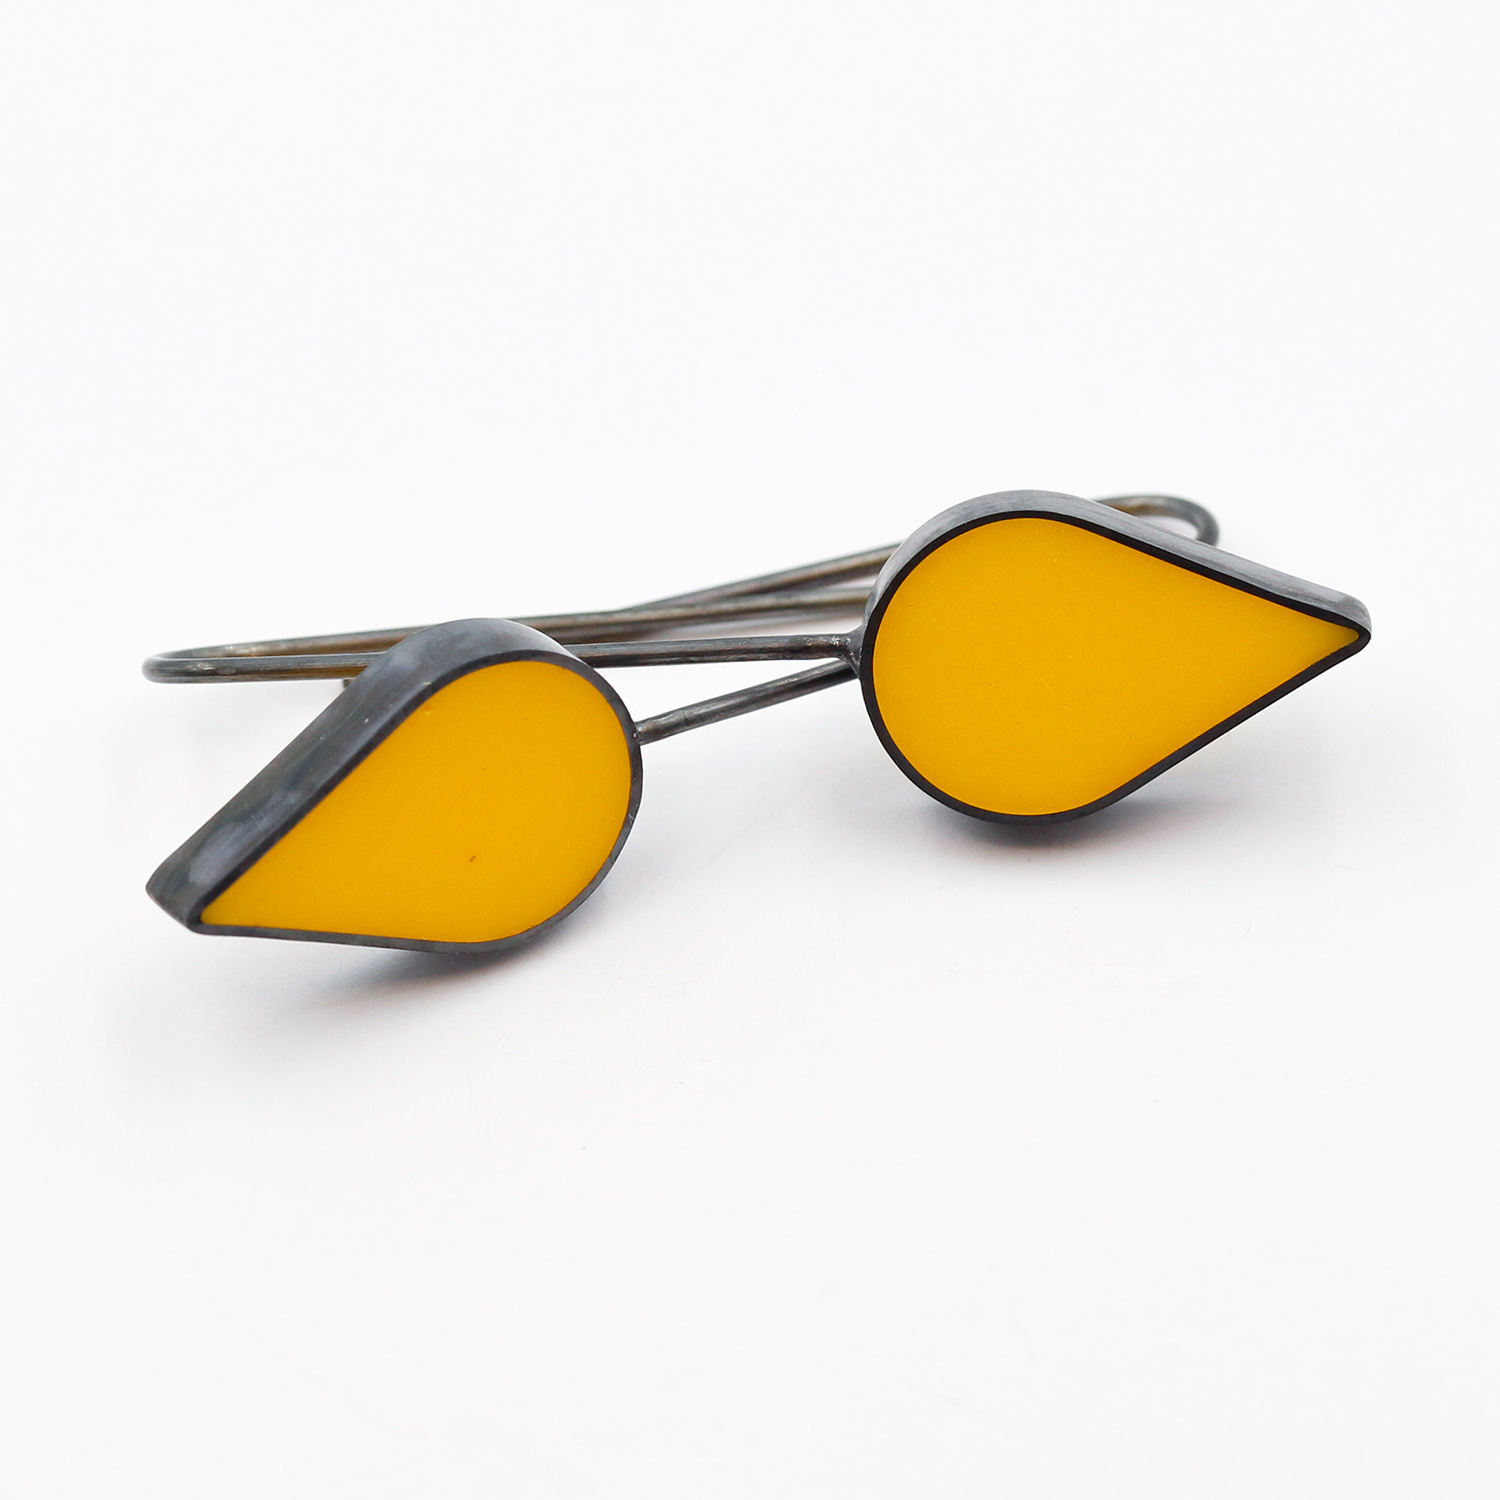 Yellow Teardrop Earrings, large by Claire Lowe